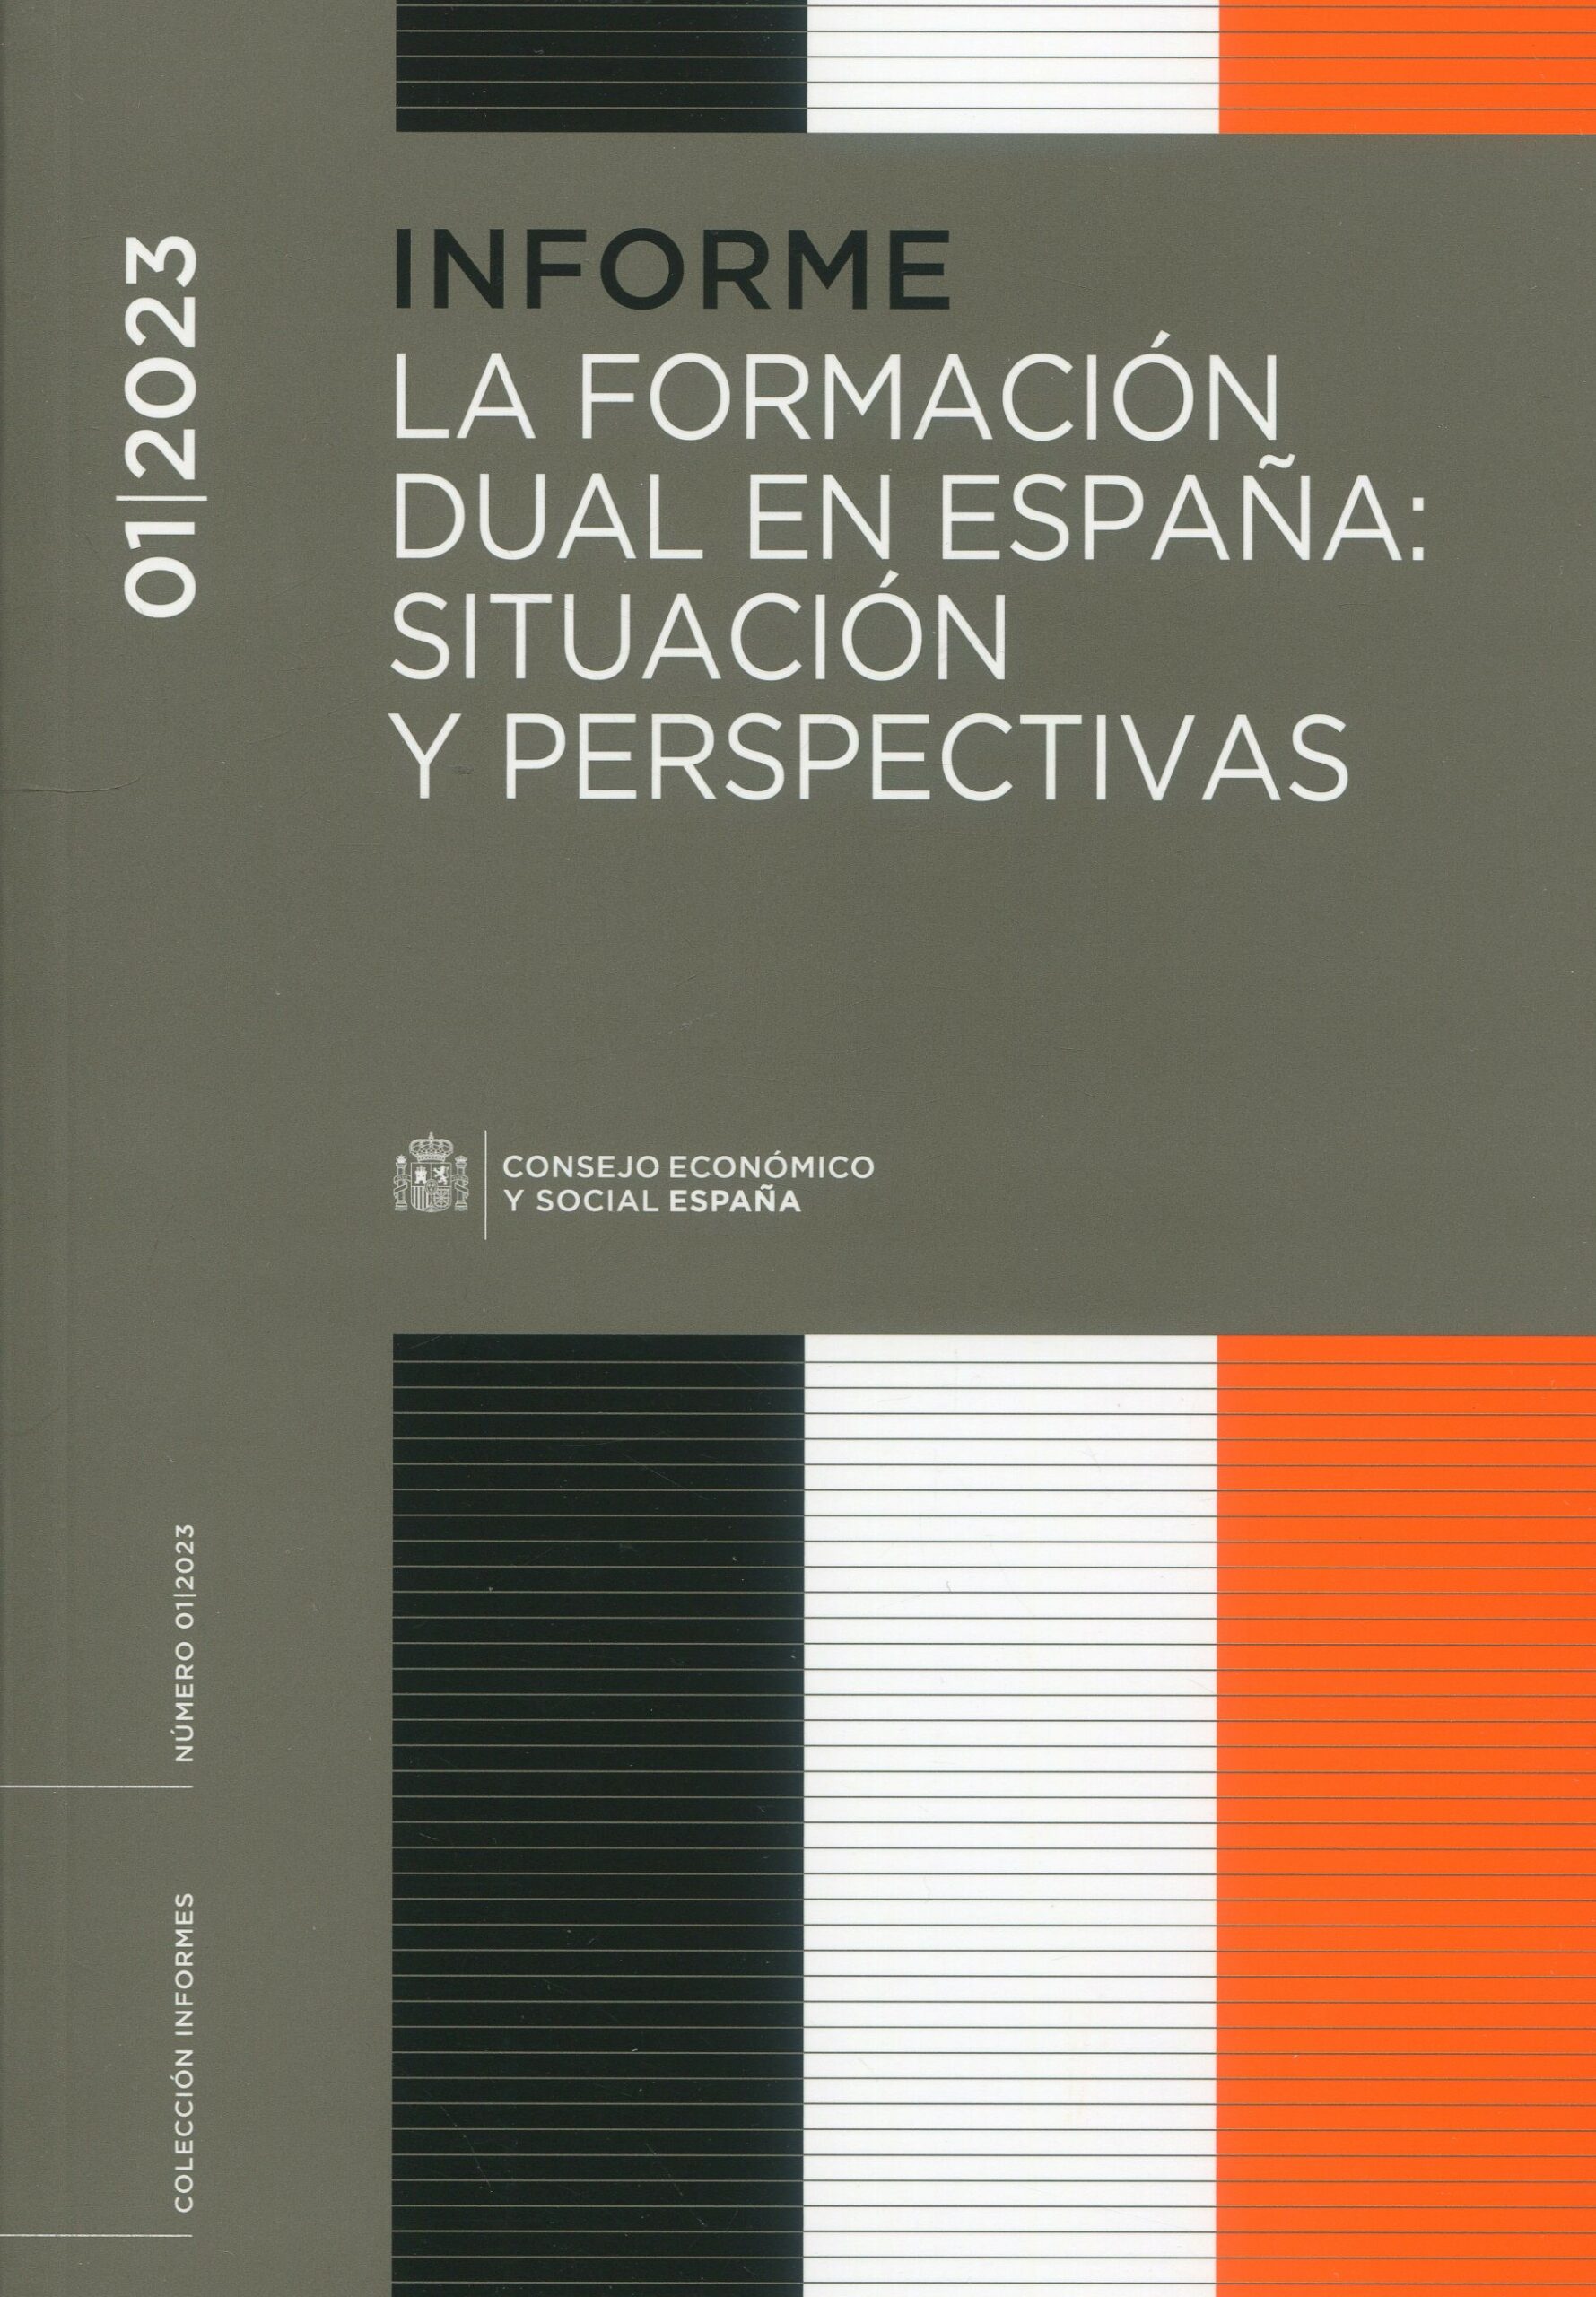 La formación dual en España: situación y perspectivas